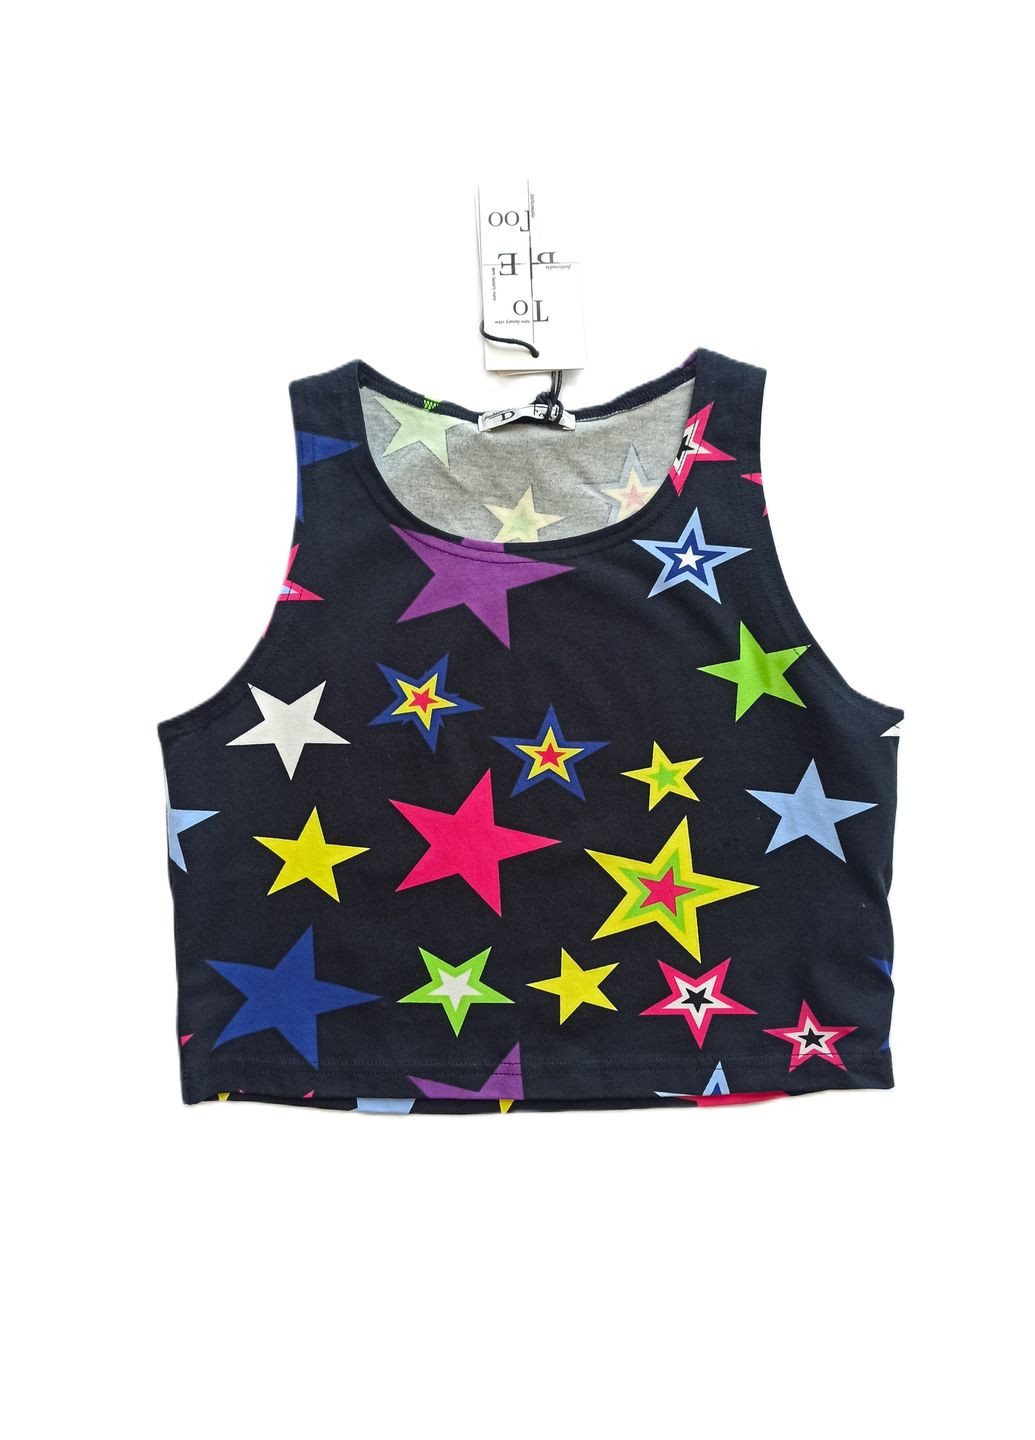 Черная летняя футболка-майка-топ для девушки tbt809 черный со звездами To Be Too